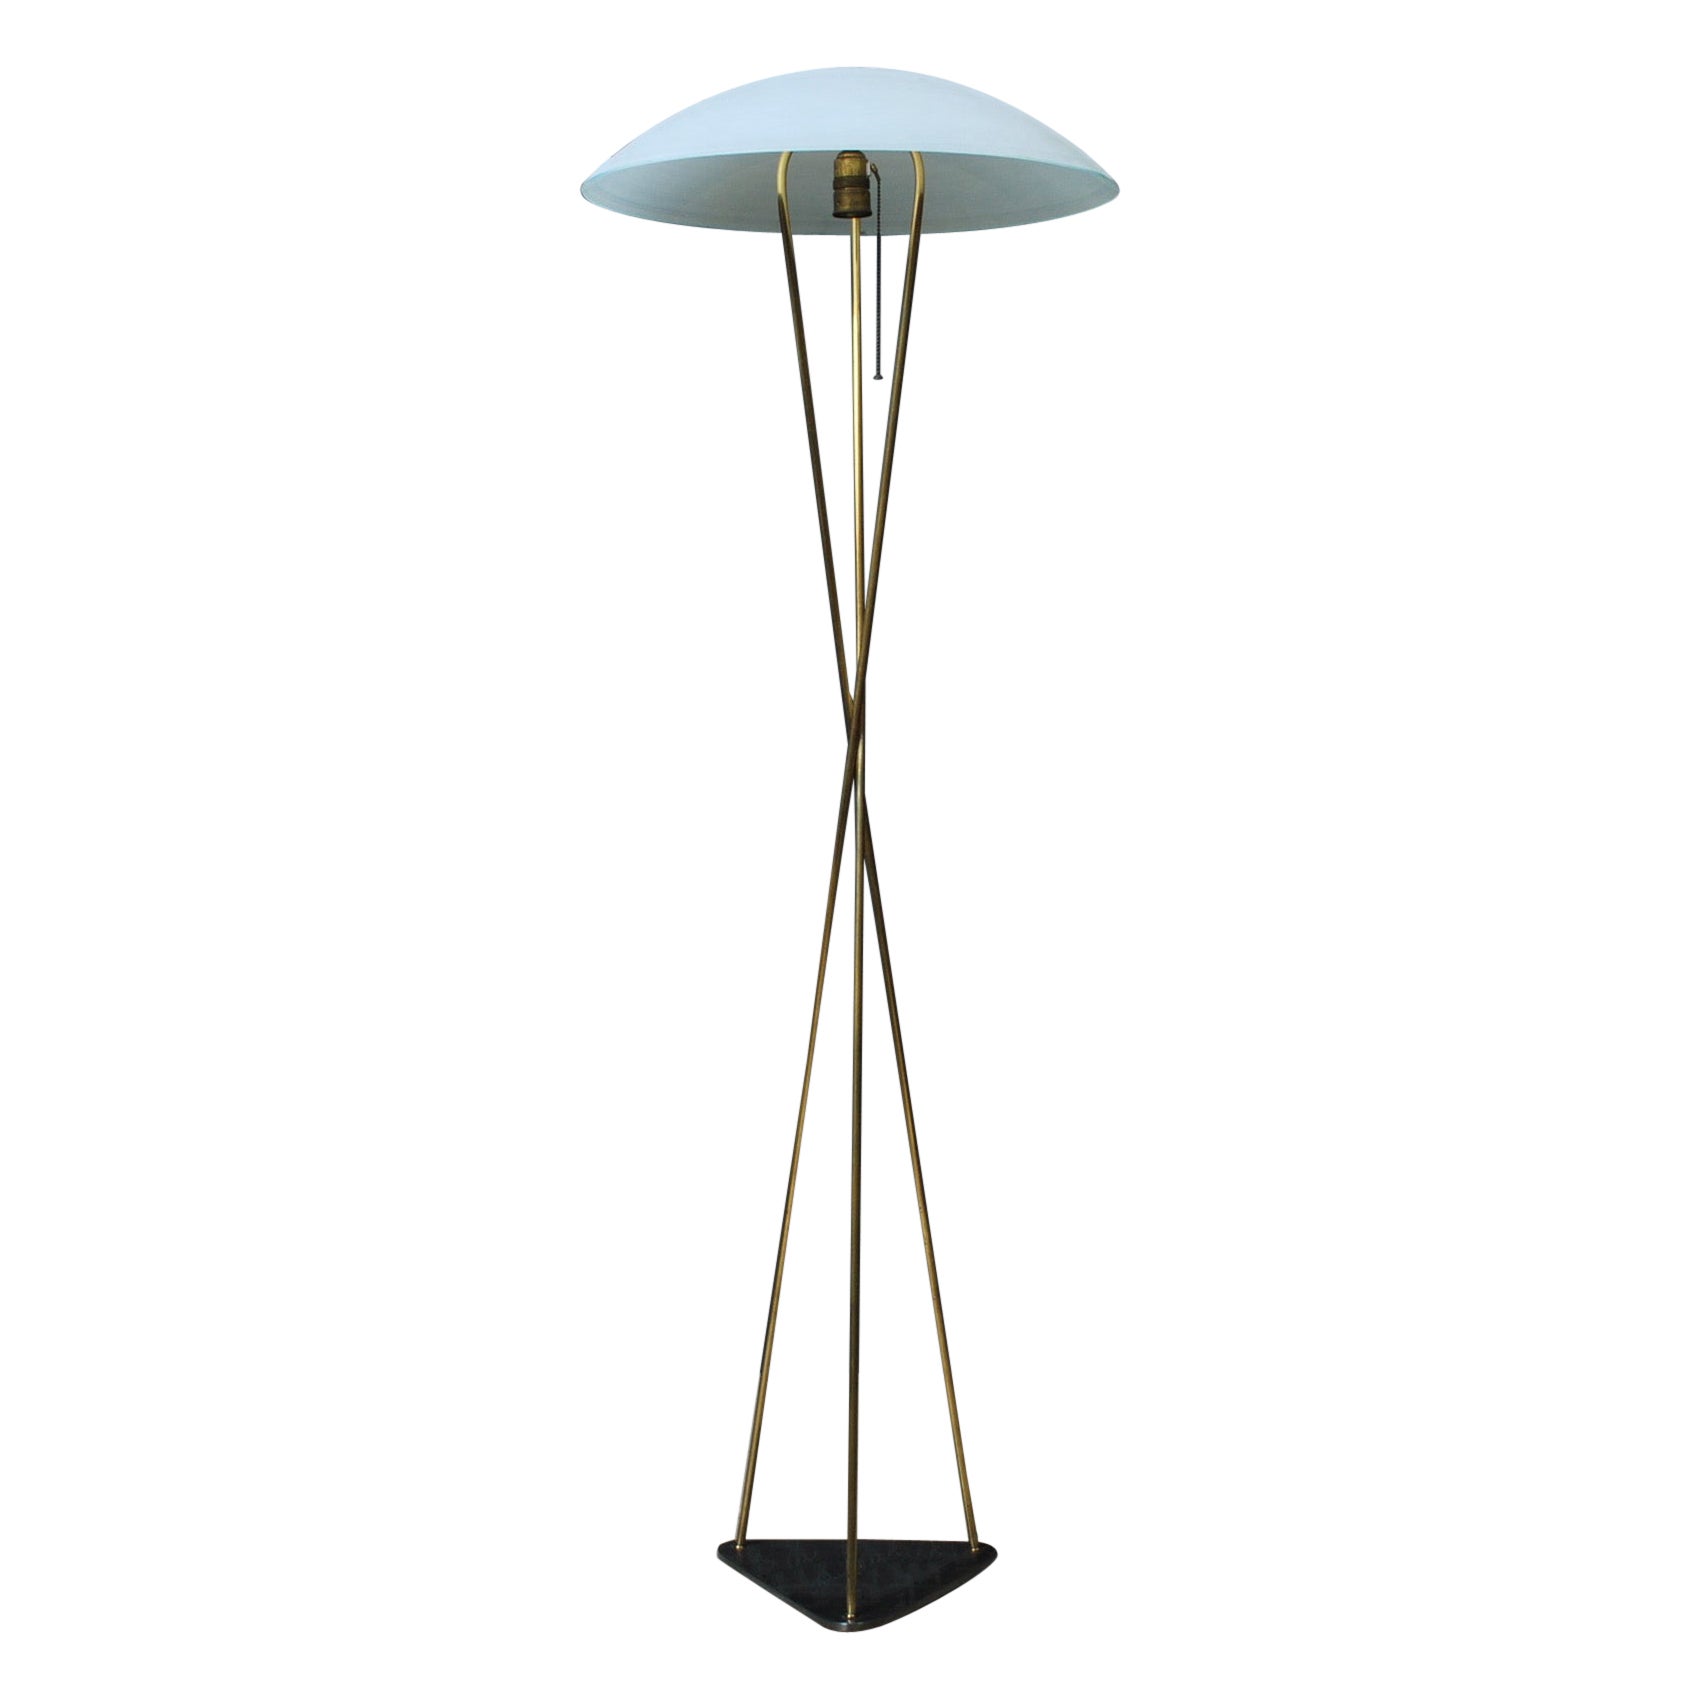 Italian Midcentury Brass Floor lamp